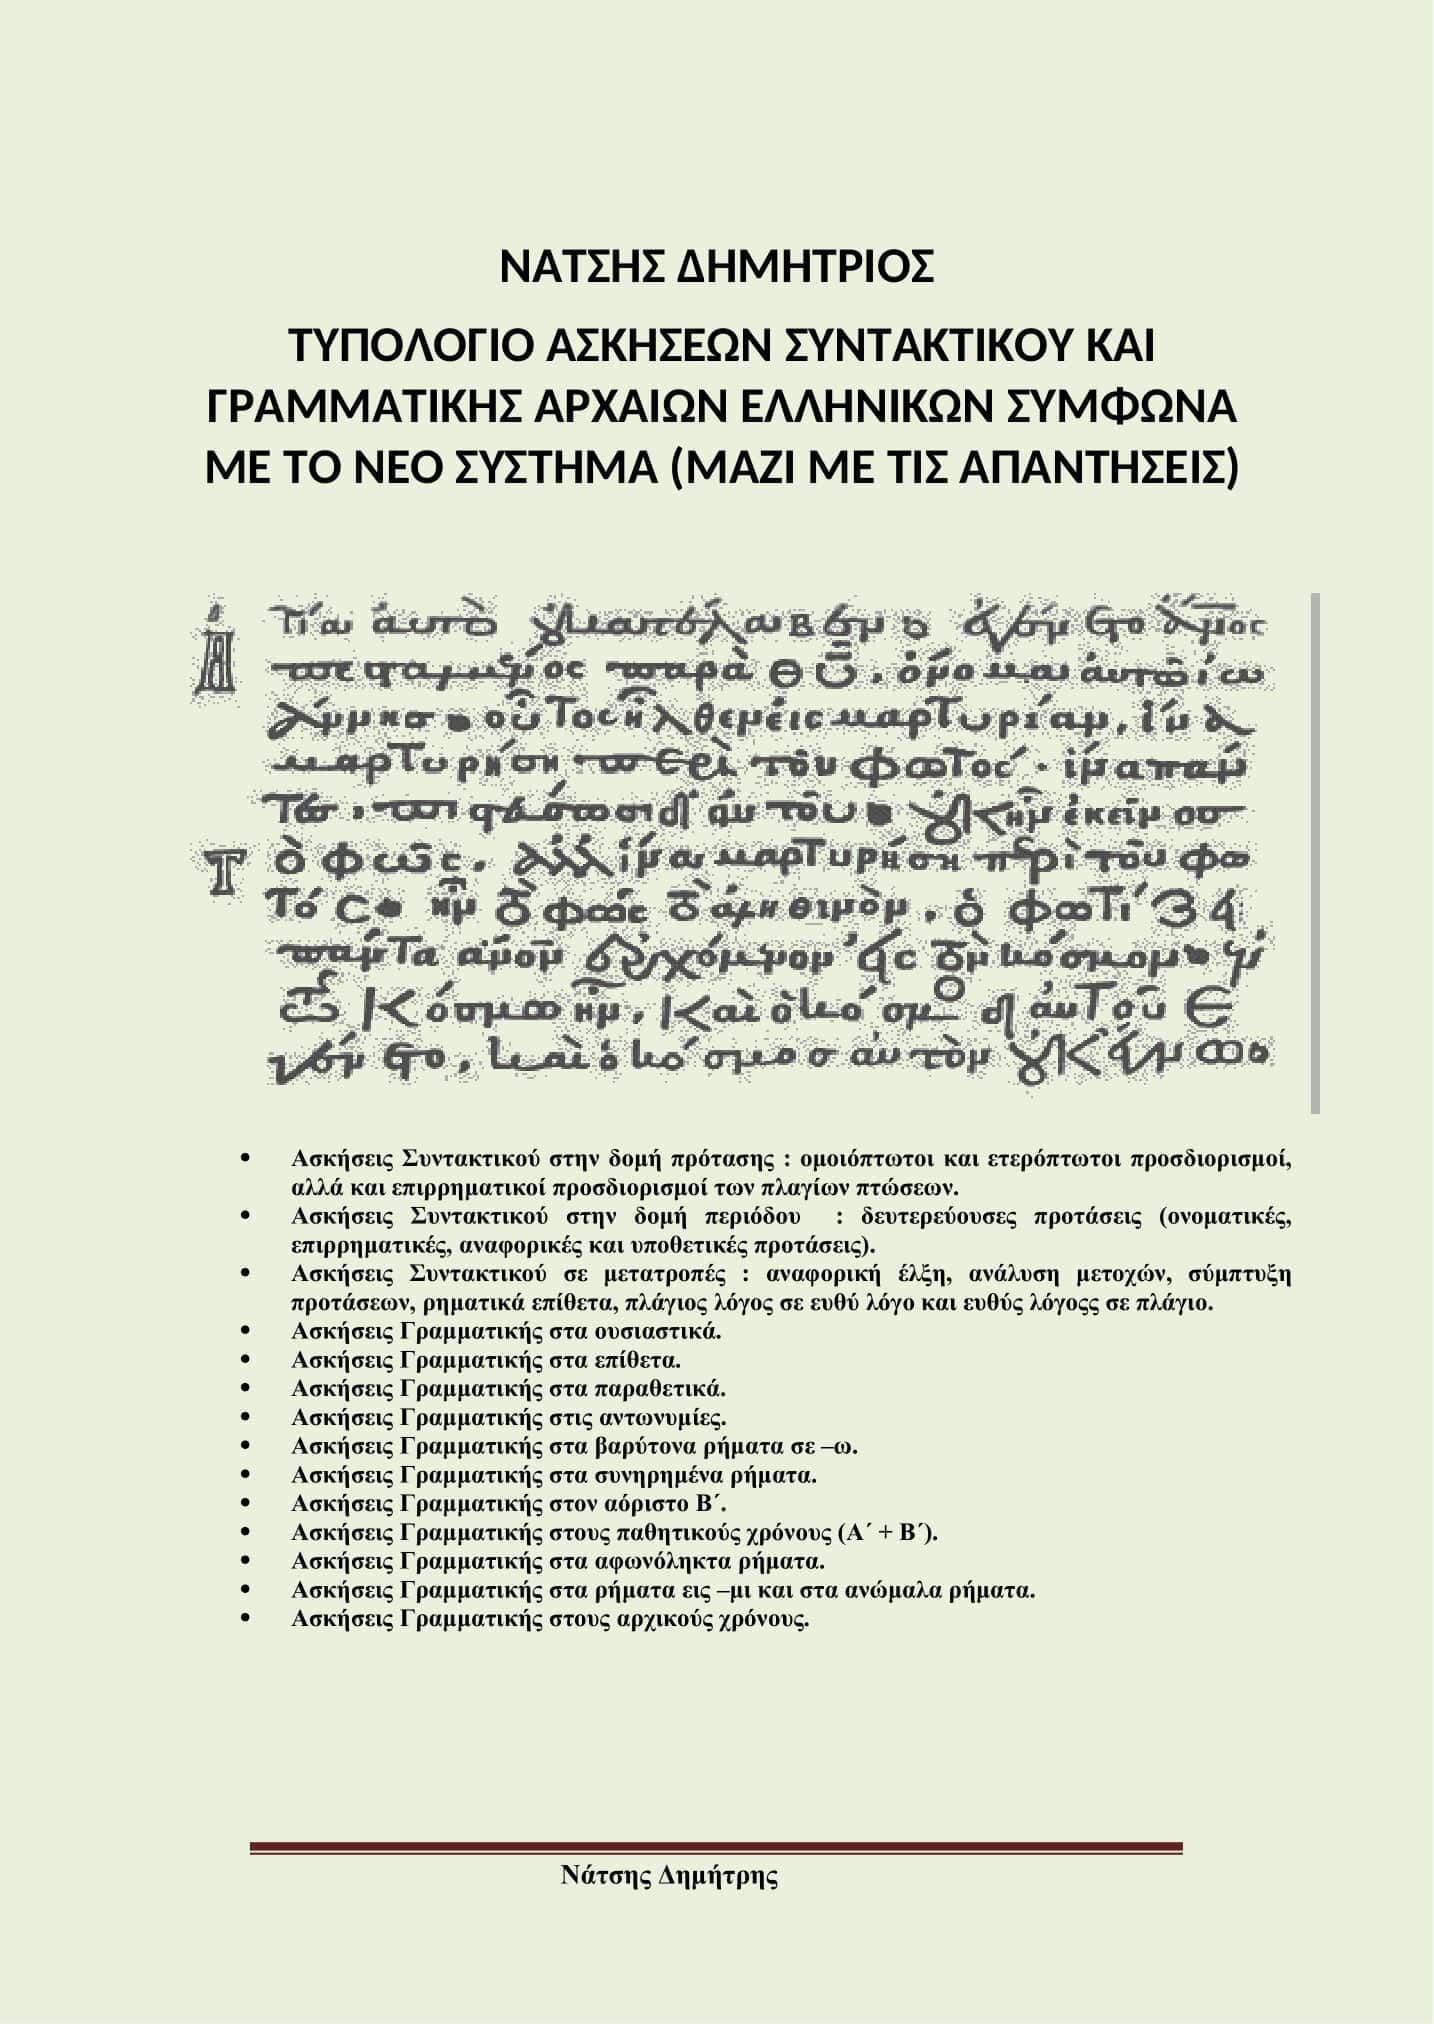 Ασκησιολόγιο Συντακτικού - Γραμματικής Αρχαίων Ελληνικών σε Ηλεκτρονική Μορφή